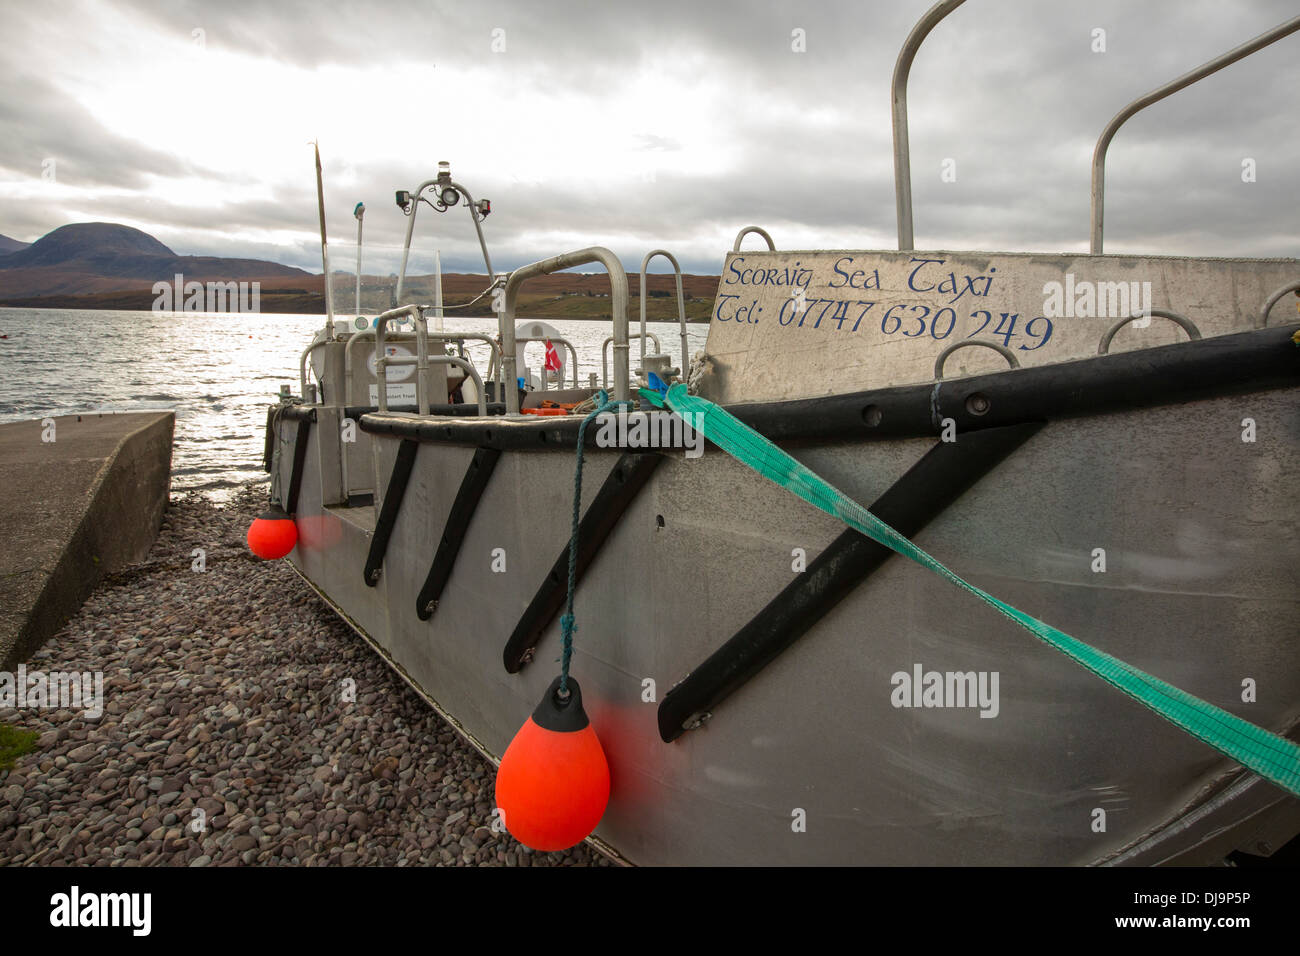 Das Boot, die Fähren beliefert über Scoraig in NW-Schottland, eines der am weitesten entfernten Gemeinden auf Festland Großbritannien, Stockfoto